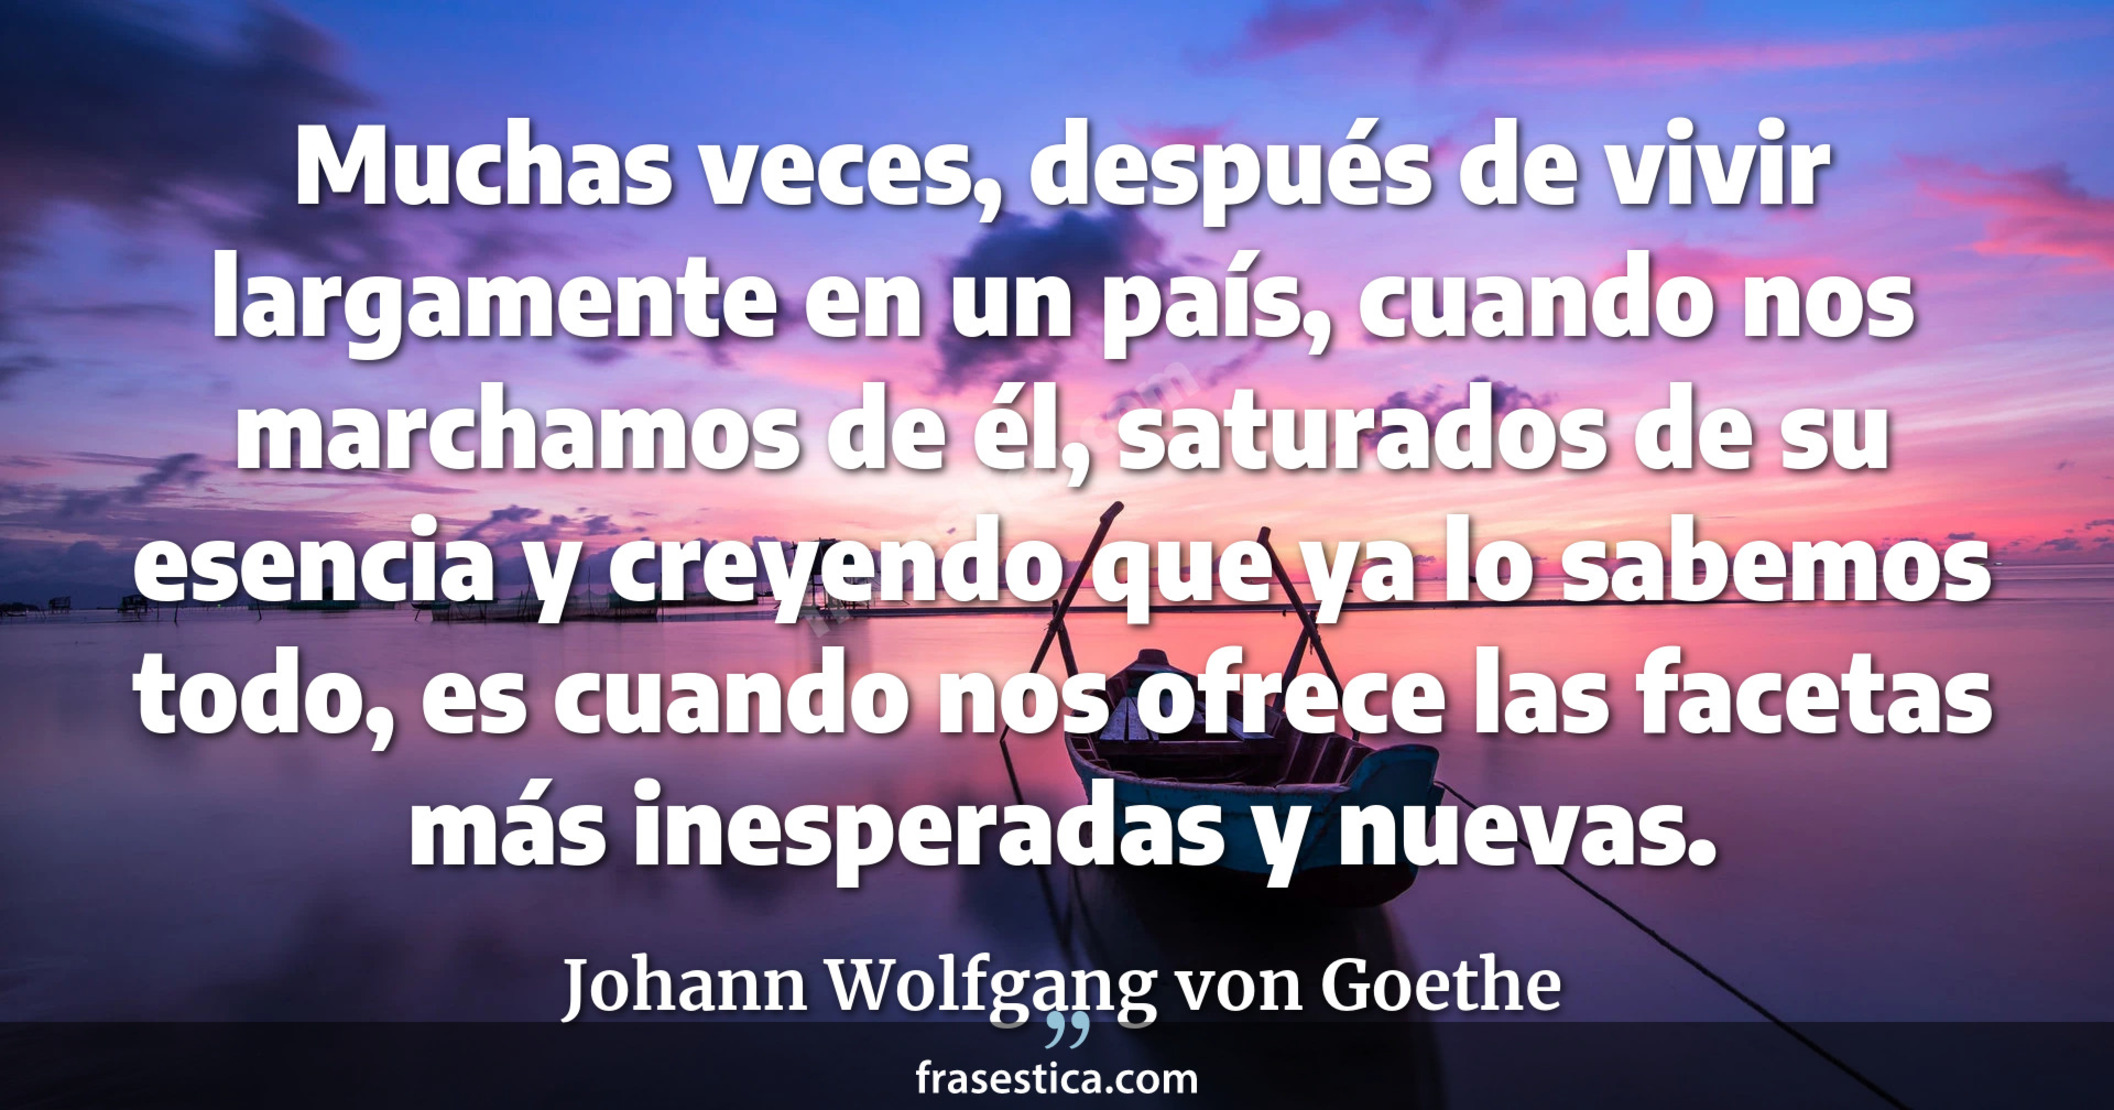 Muchas veces, después de vivir largamente en un país, cuando nos marchamos de él, saturados de su esencia y creyendo que ya lo sabemos todo, es cuando nos ofrece las facetas más inesperadas y nuevas. - Johann Wolfgang von Goethe